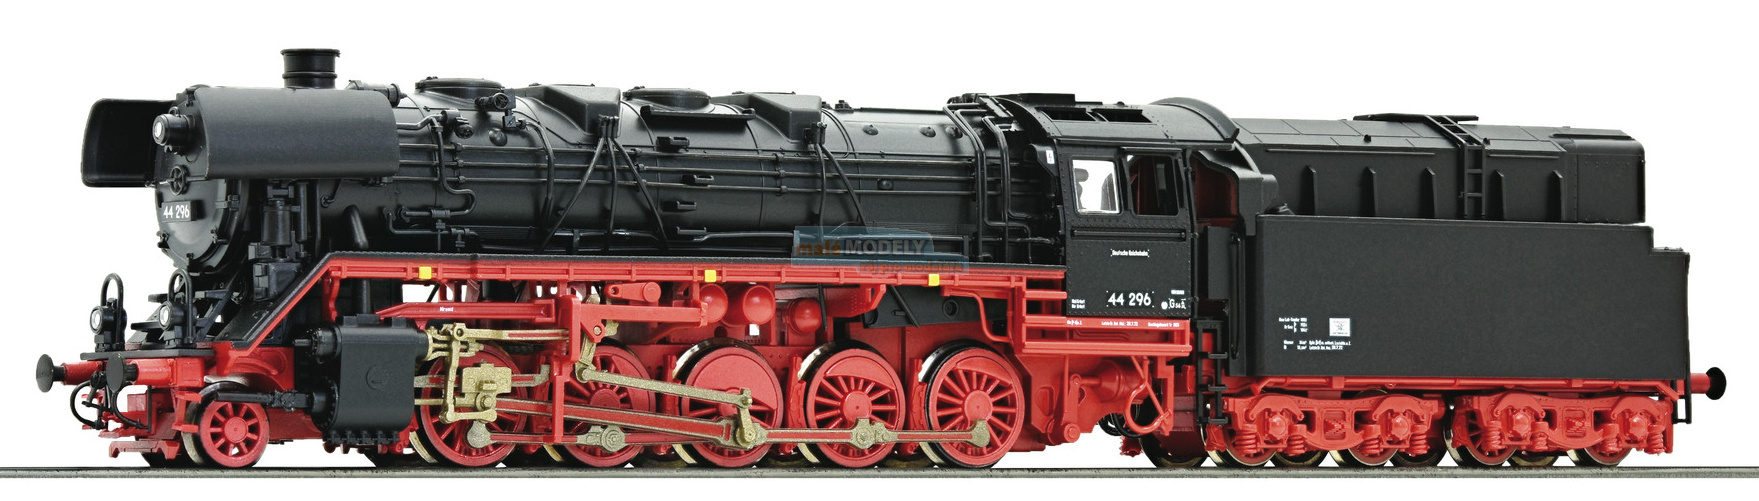 Parní lokomotiva BR 44 s nádobou na olej